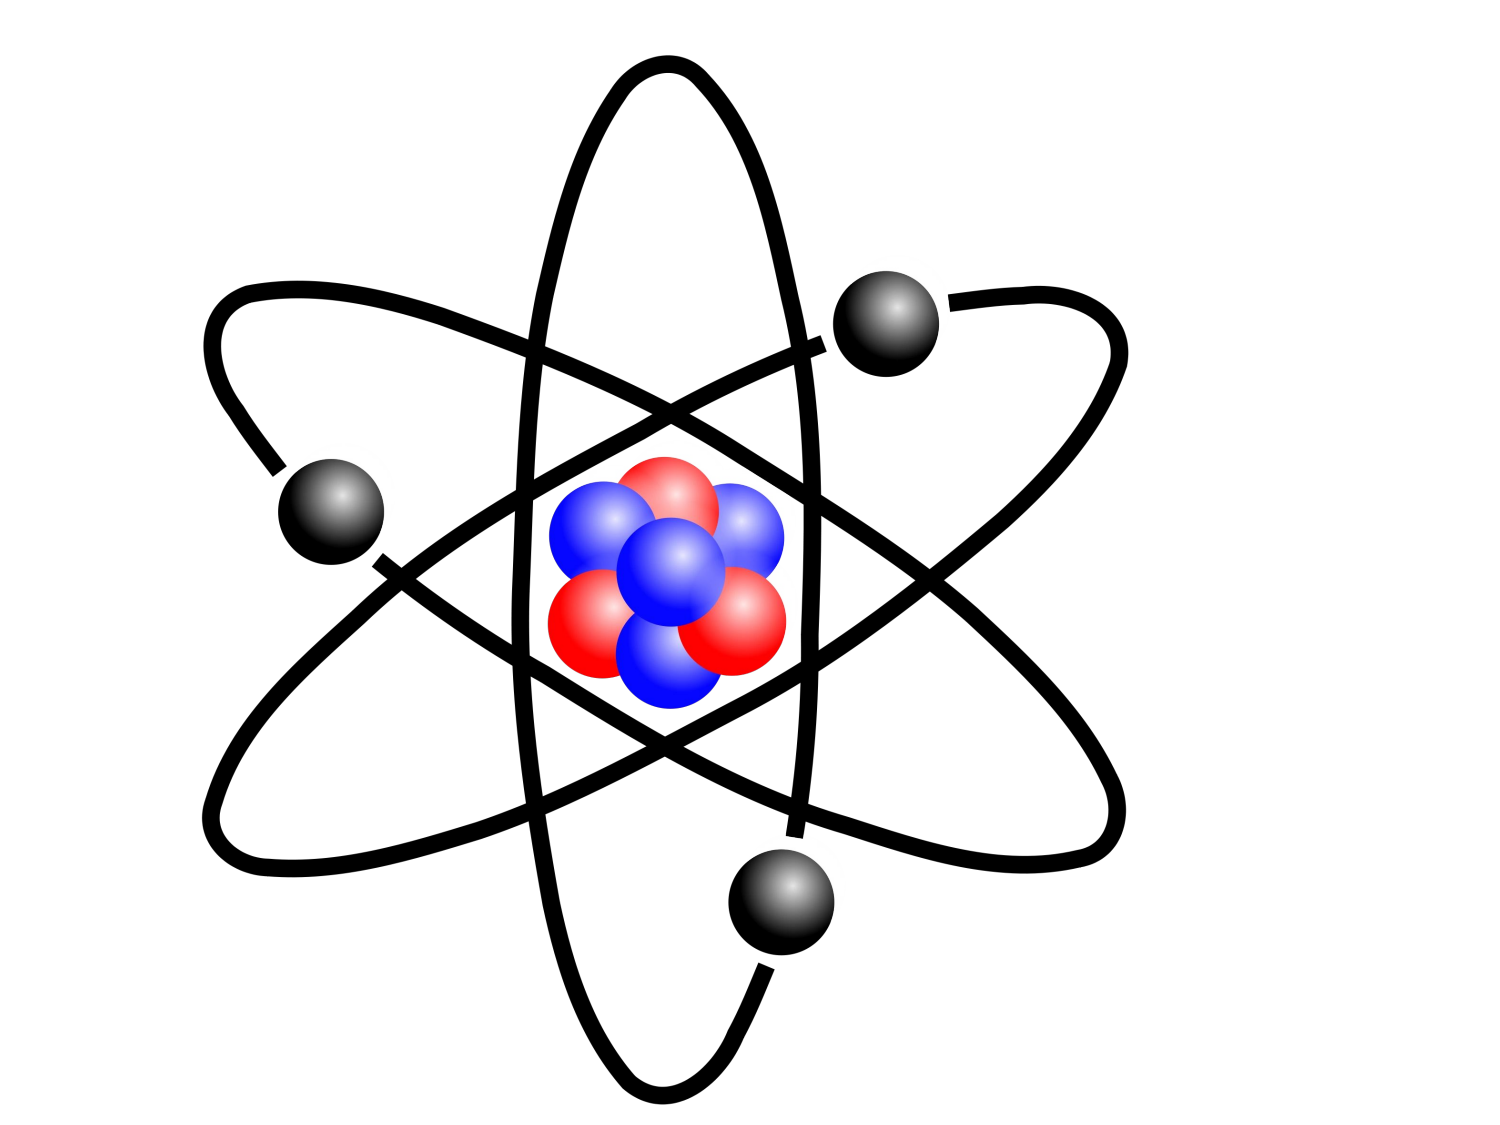 Fizika. Схема атома нейтрона ядро. Атом молекулы ядерная модель. Атомное ядро. Схематическое изображение атома.